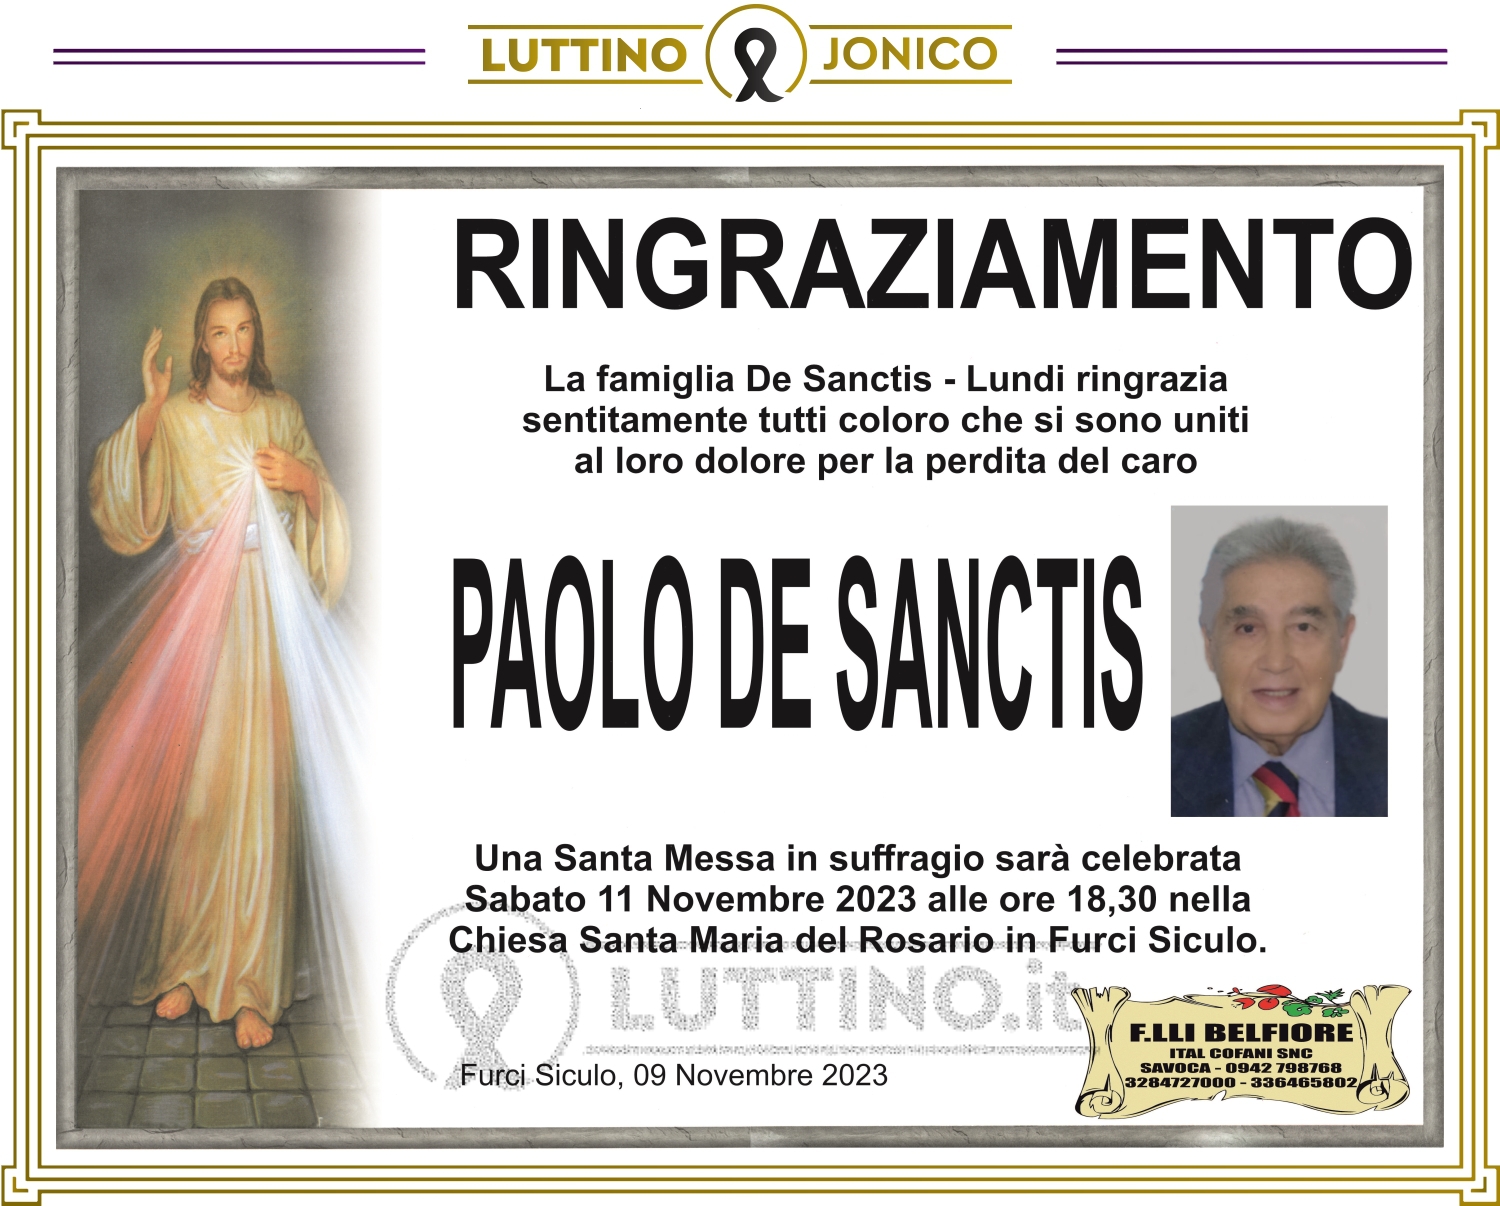 Paolo De Sanctis